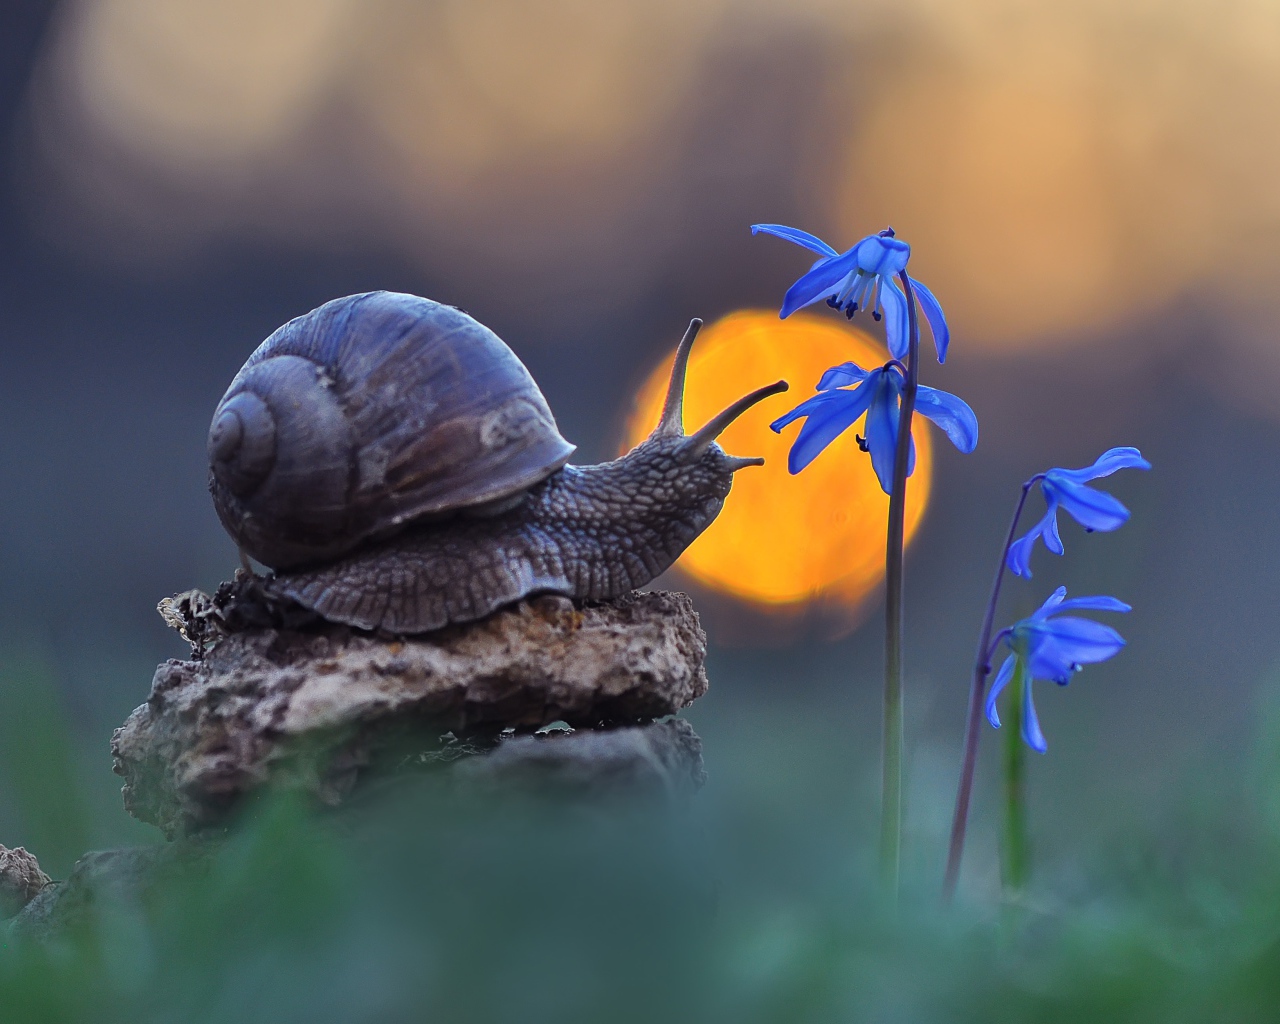 Улитка сидит на камне у голубого цветка 